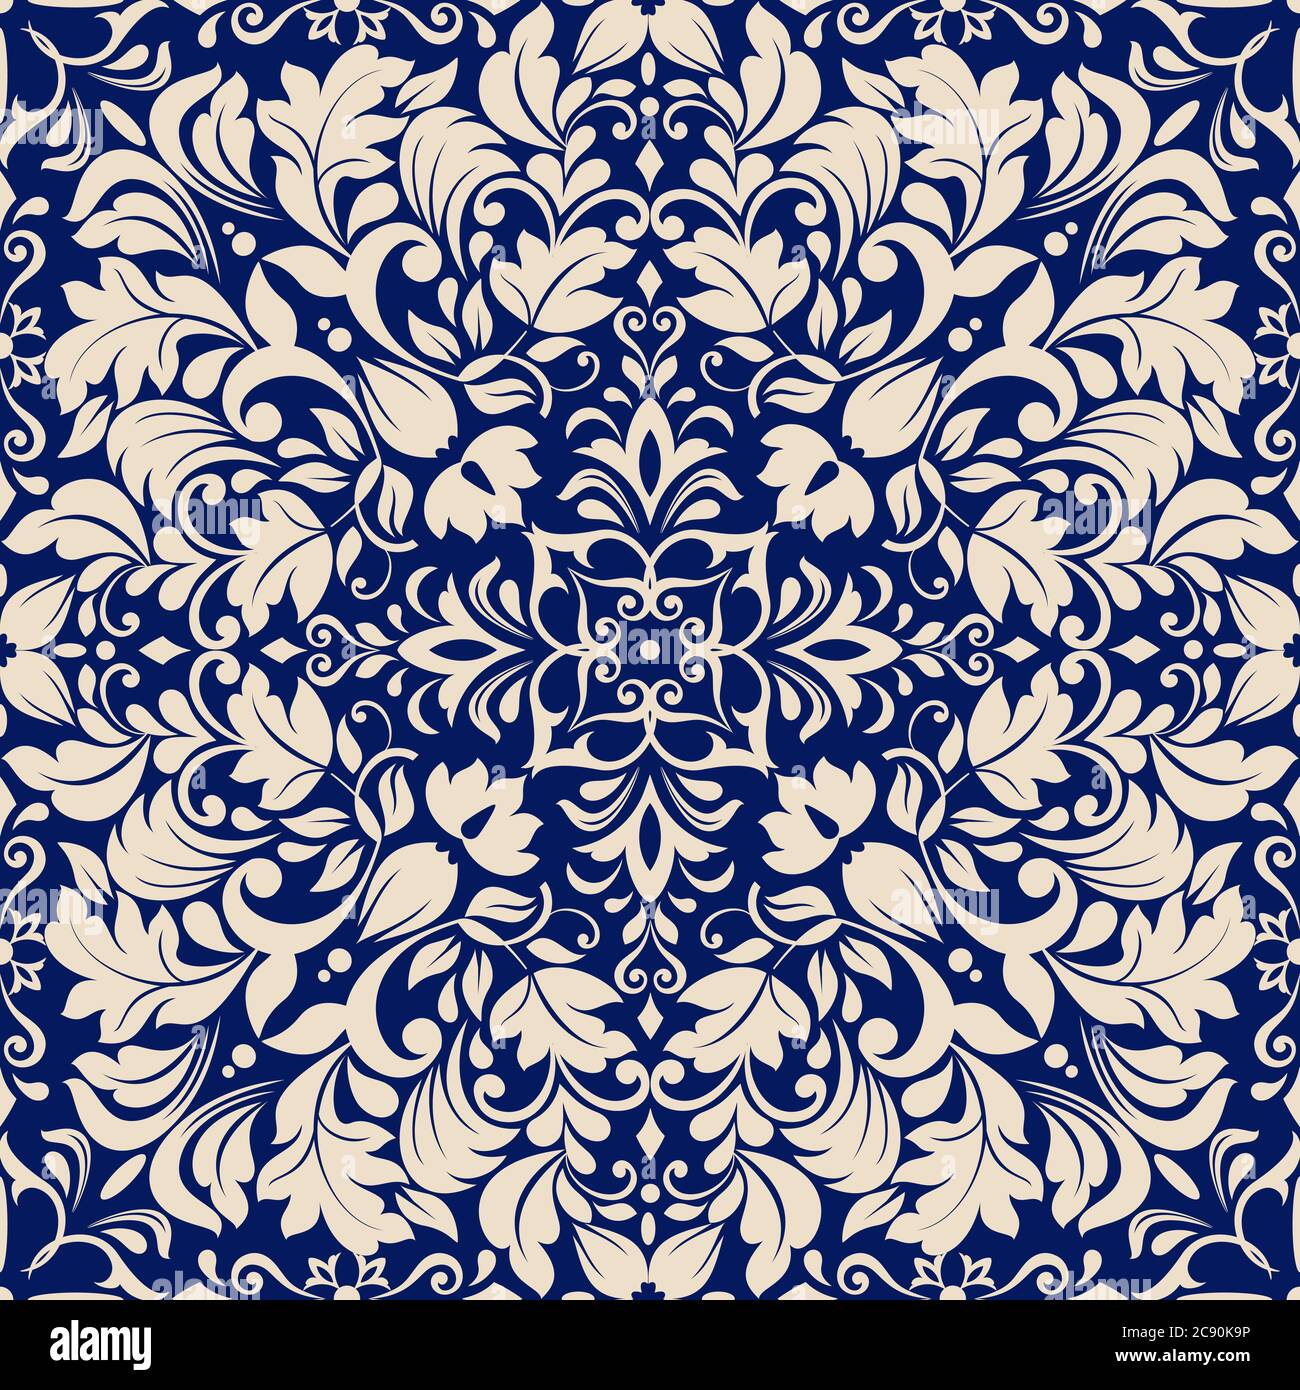 Nahtlose ethnische Tracery in einem arabischen Stil Muster. Geometrisches Ornament in Blautönen. Stilisierte Arabesken Dekoration. Vektorgrafik. Stock Vektor